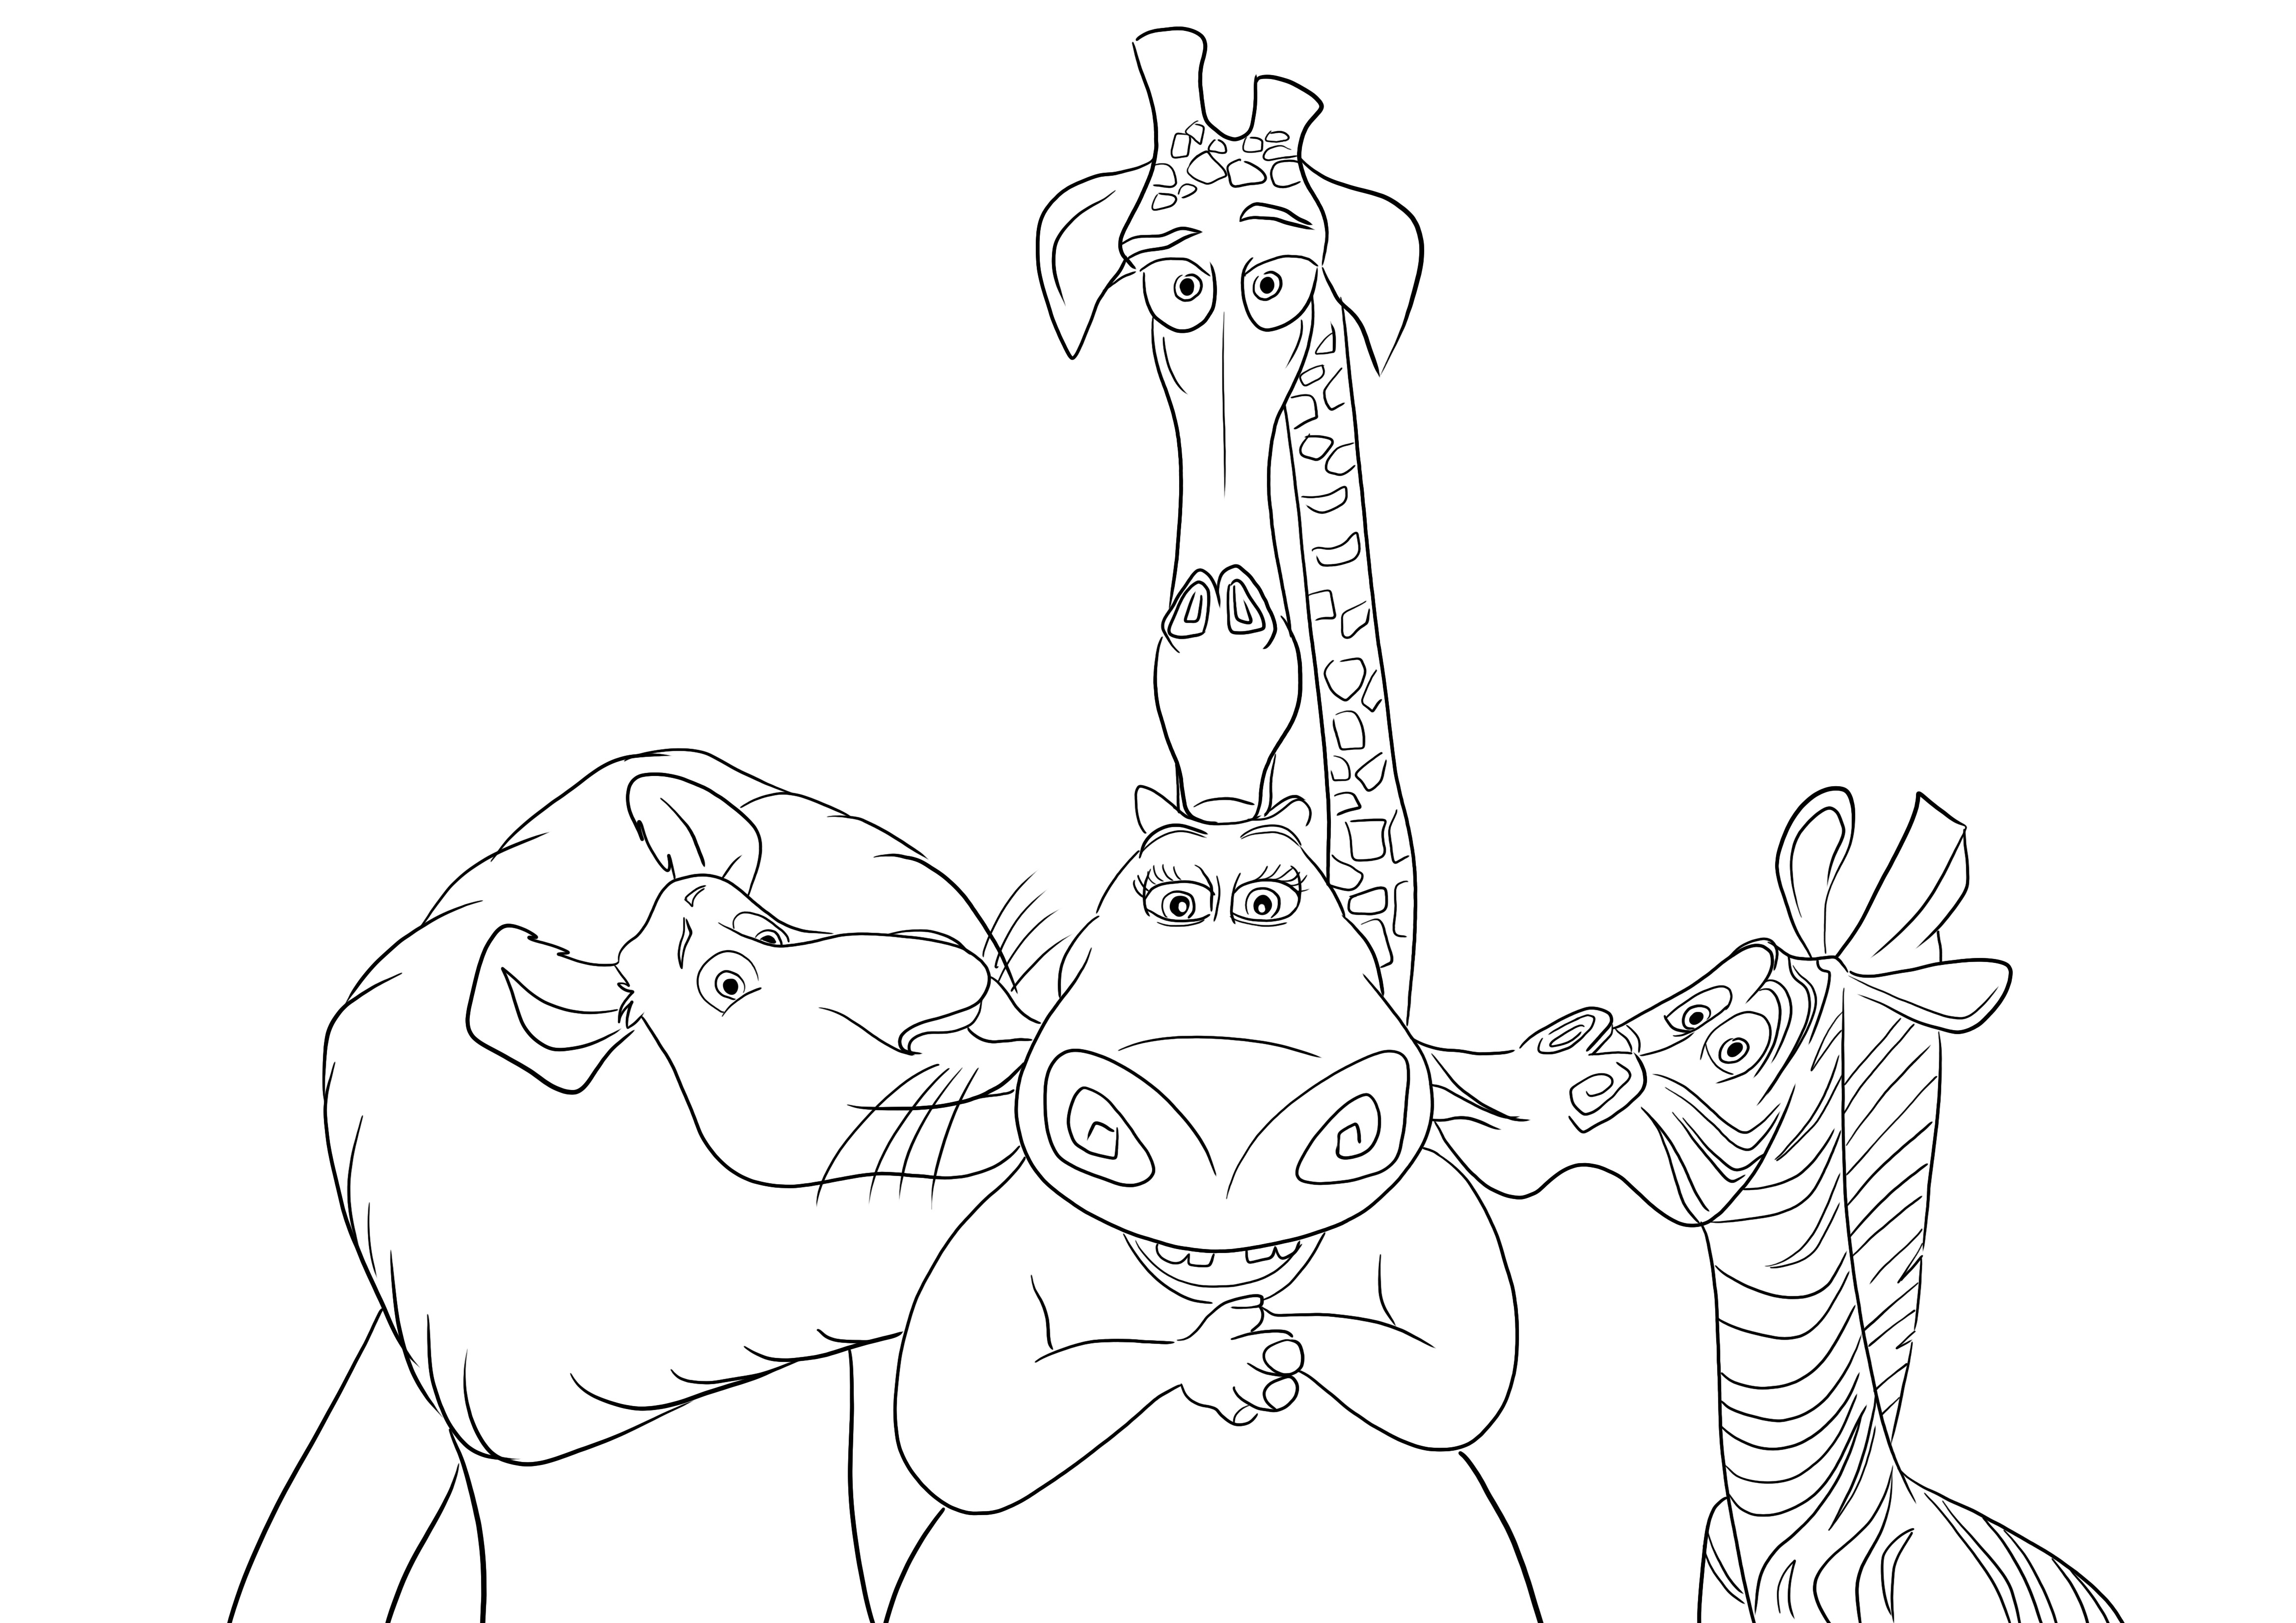 Stampabile gratuitamente di Alex-Martin e Melman che baciano Gloria l'ippopotamo da colorare per i bambini